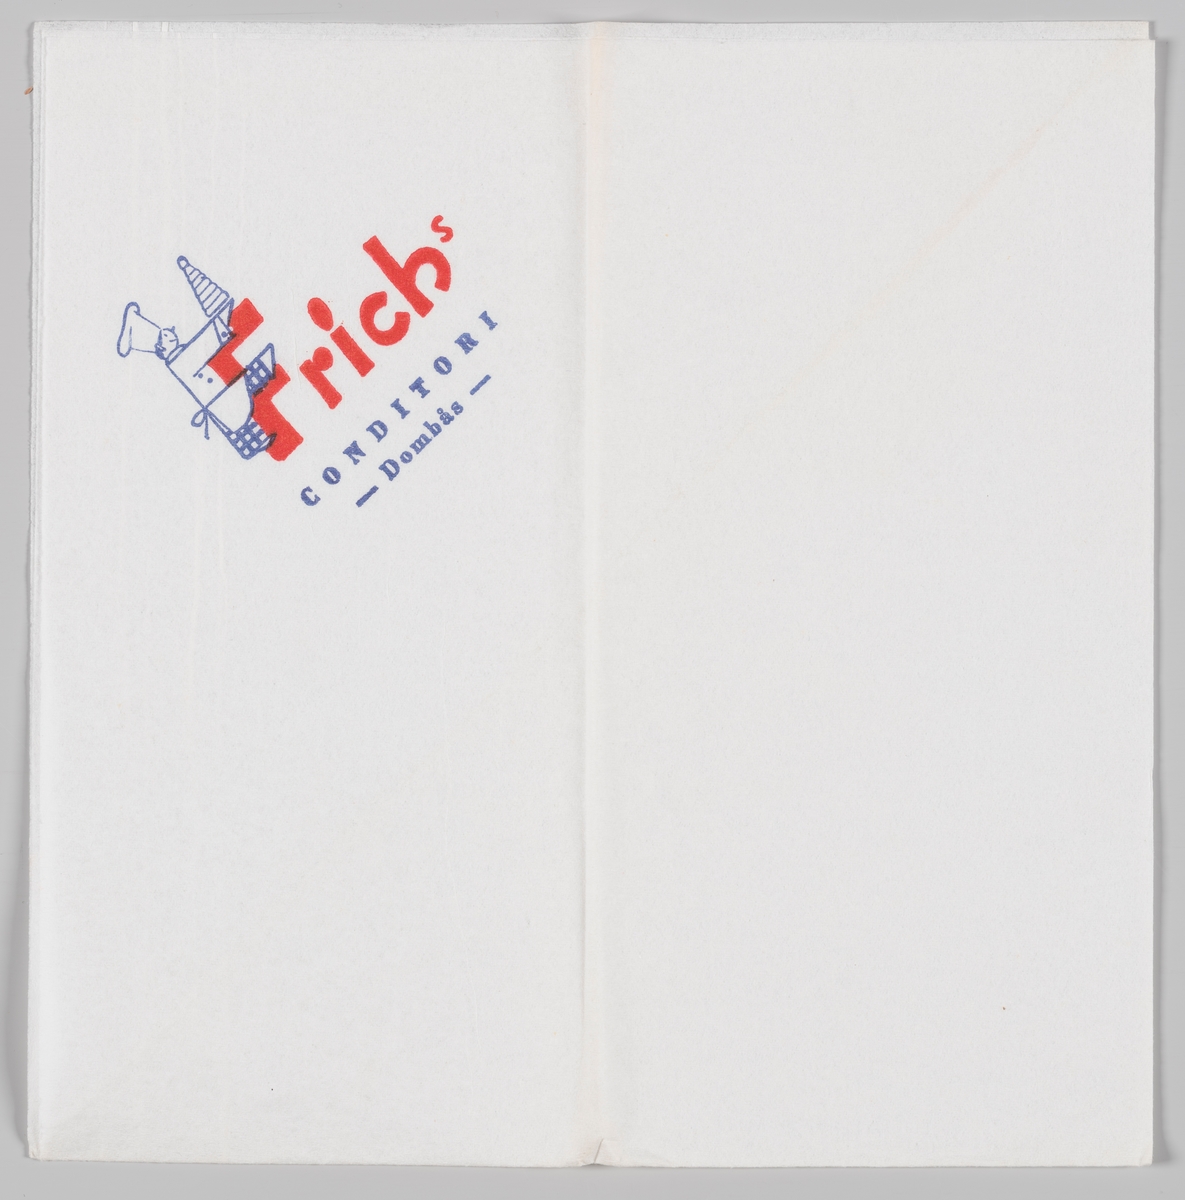 En baker med en kransekake som krabber opp på bokstaven F i reklameteksten for Frich`s Conditori på Dombås.